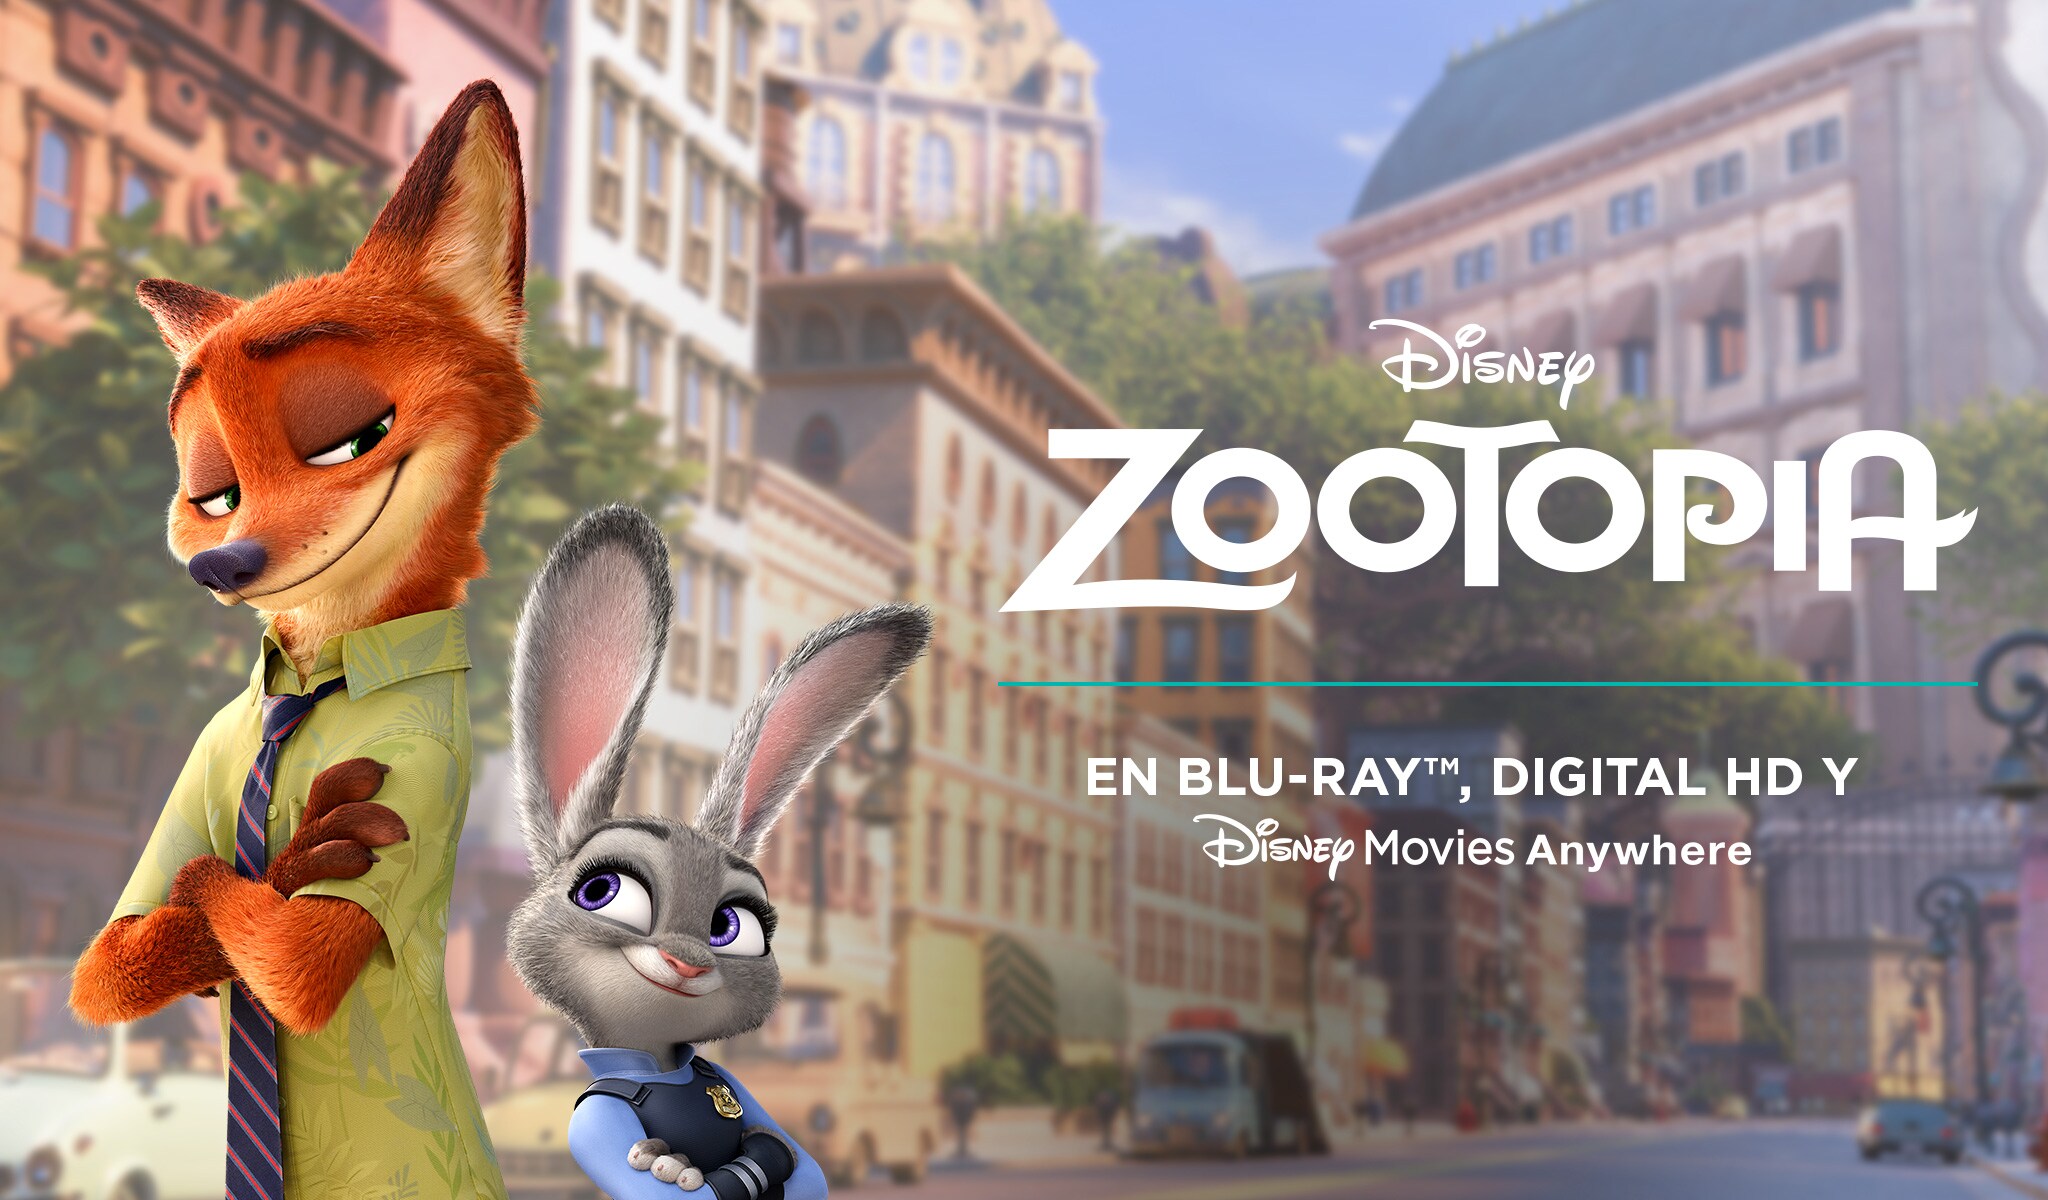 Zootopia | Página oficial | Películas Disney ¡Ajá!